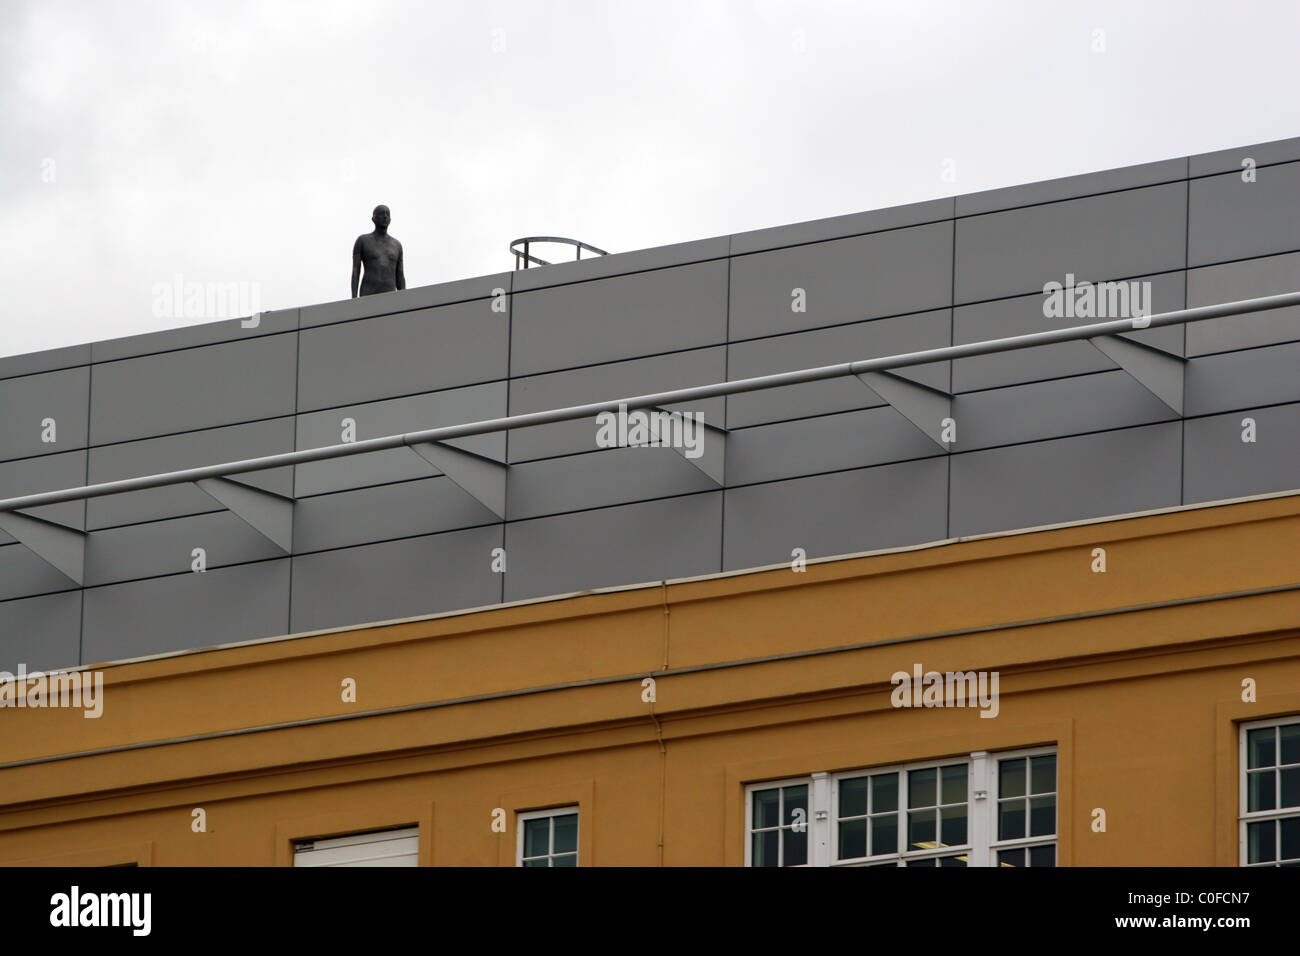 Event Horizon ist der Name einer Skulptur im öffentlichen Raum Installation durch den englischen Künstler Antony Gormley. Southbank, London UK. Stockfoto